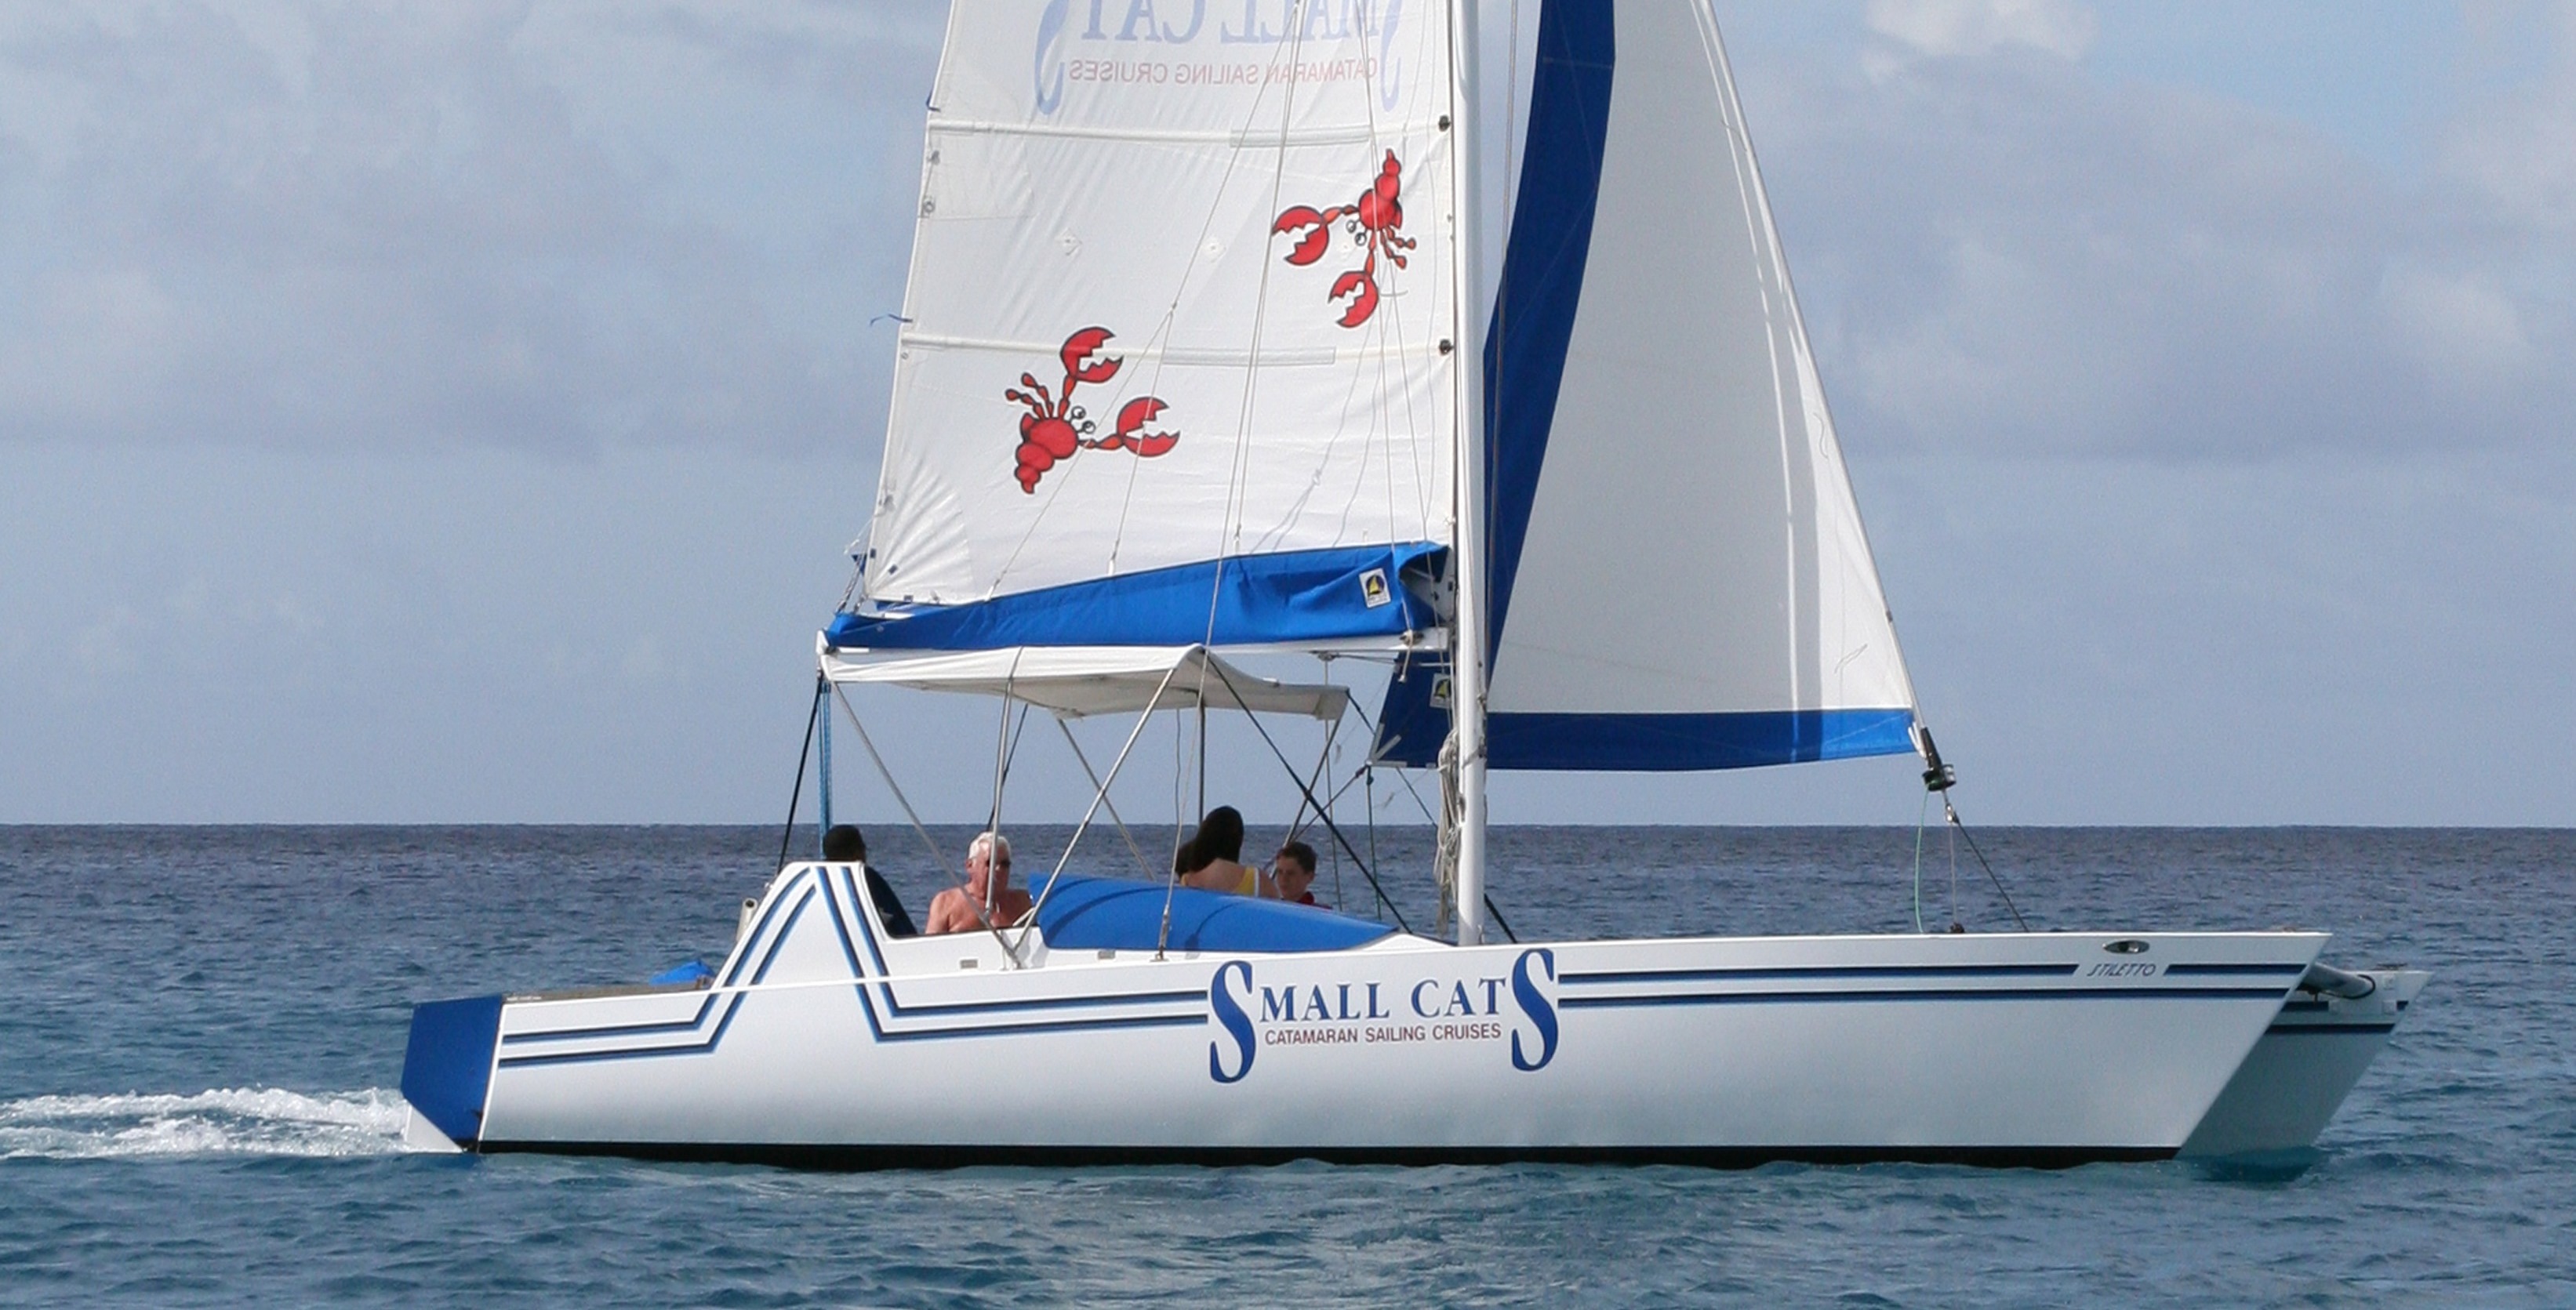 Small Cats Catamaran Cruises in Cruises at Barbados Info Barbados.